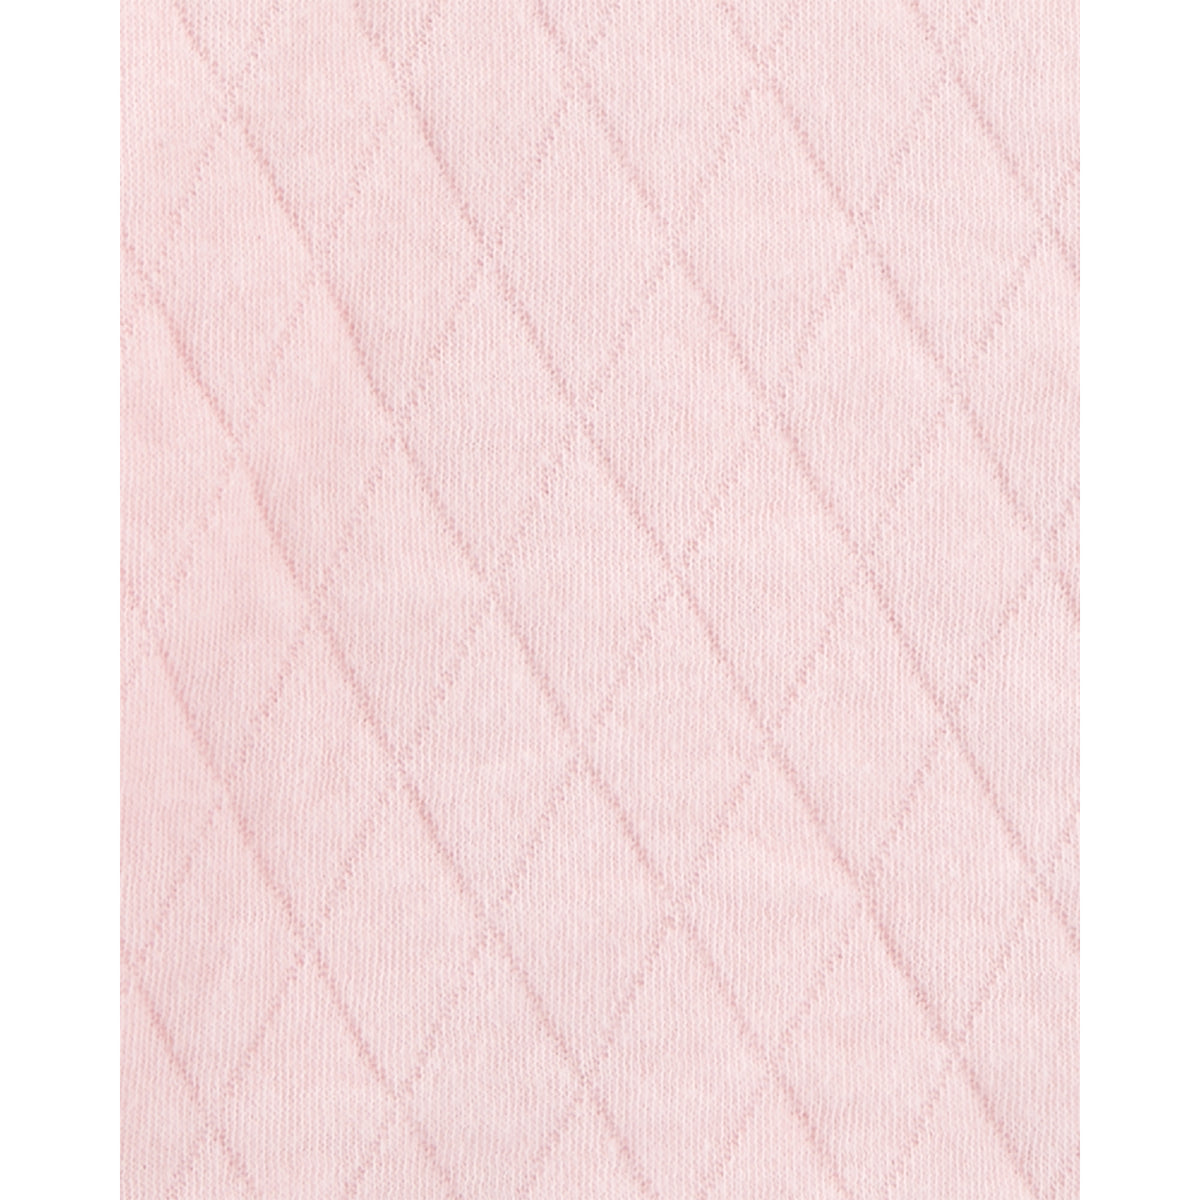 OshKosh pink plaid long-sleeved jacket (12M-24M)